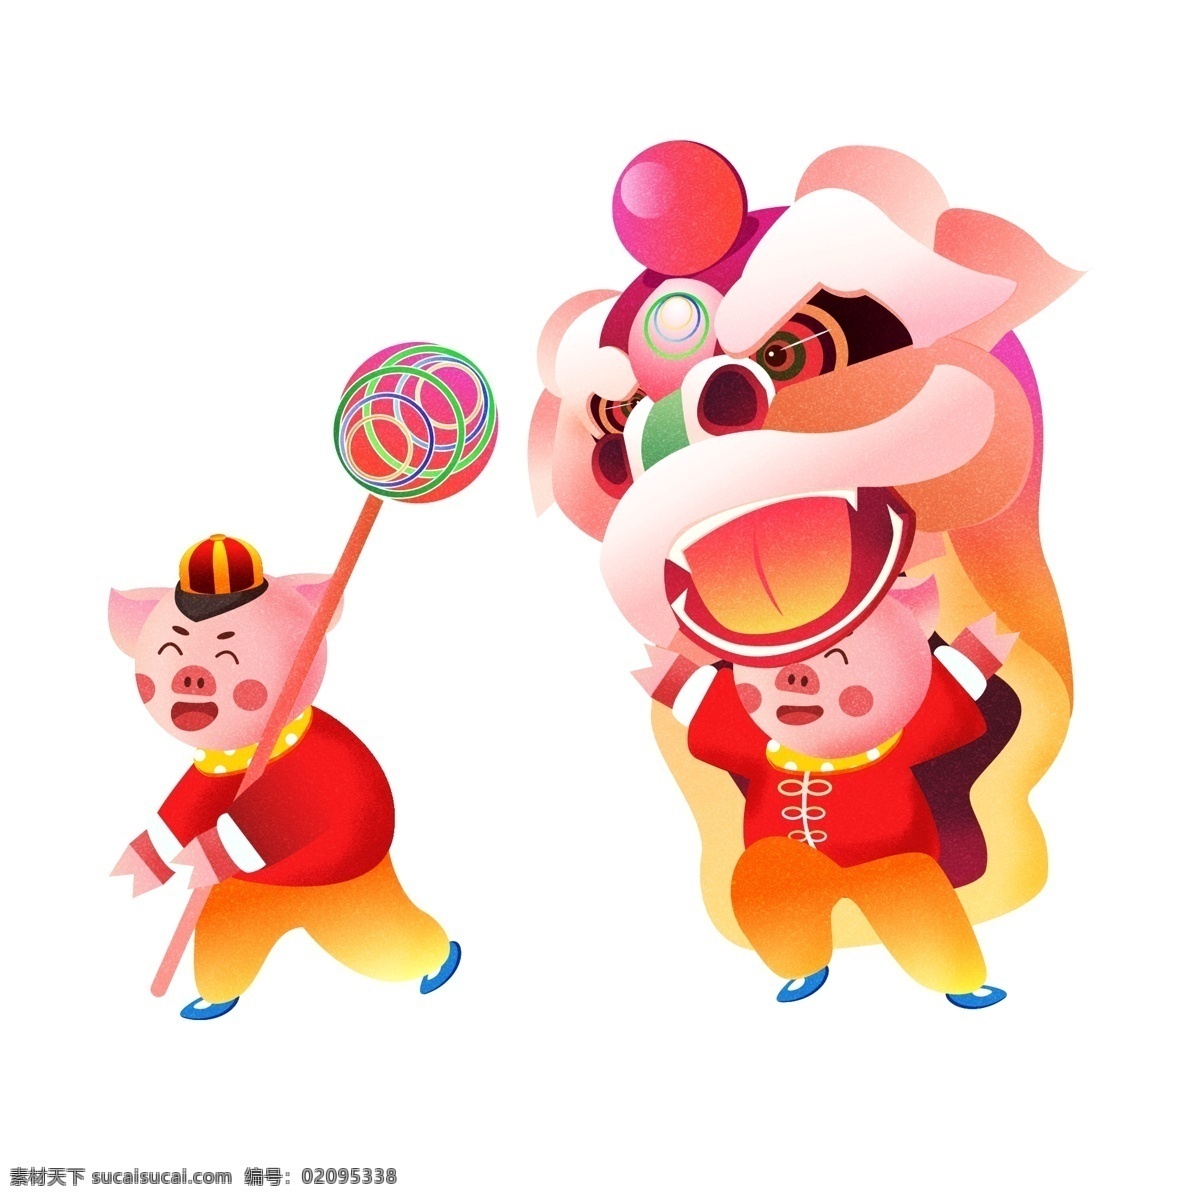 2019 春节 猪年 小 猪 舞狮 原创 新年 喜庆 可爱 生肖 过年 卡通 活动